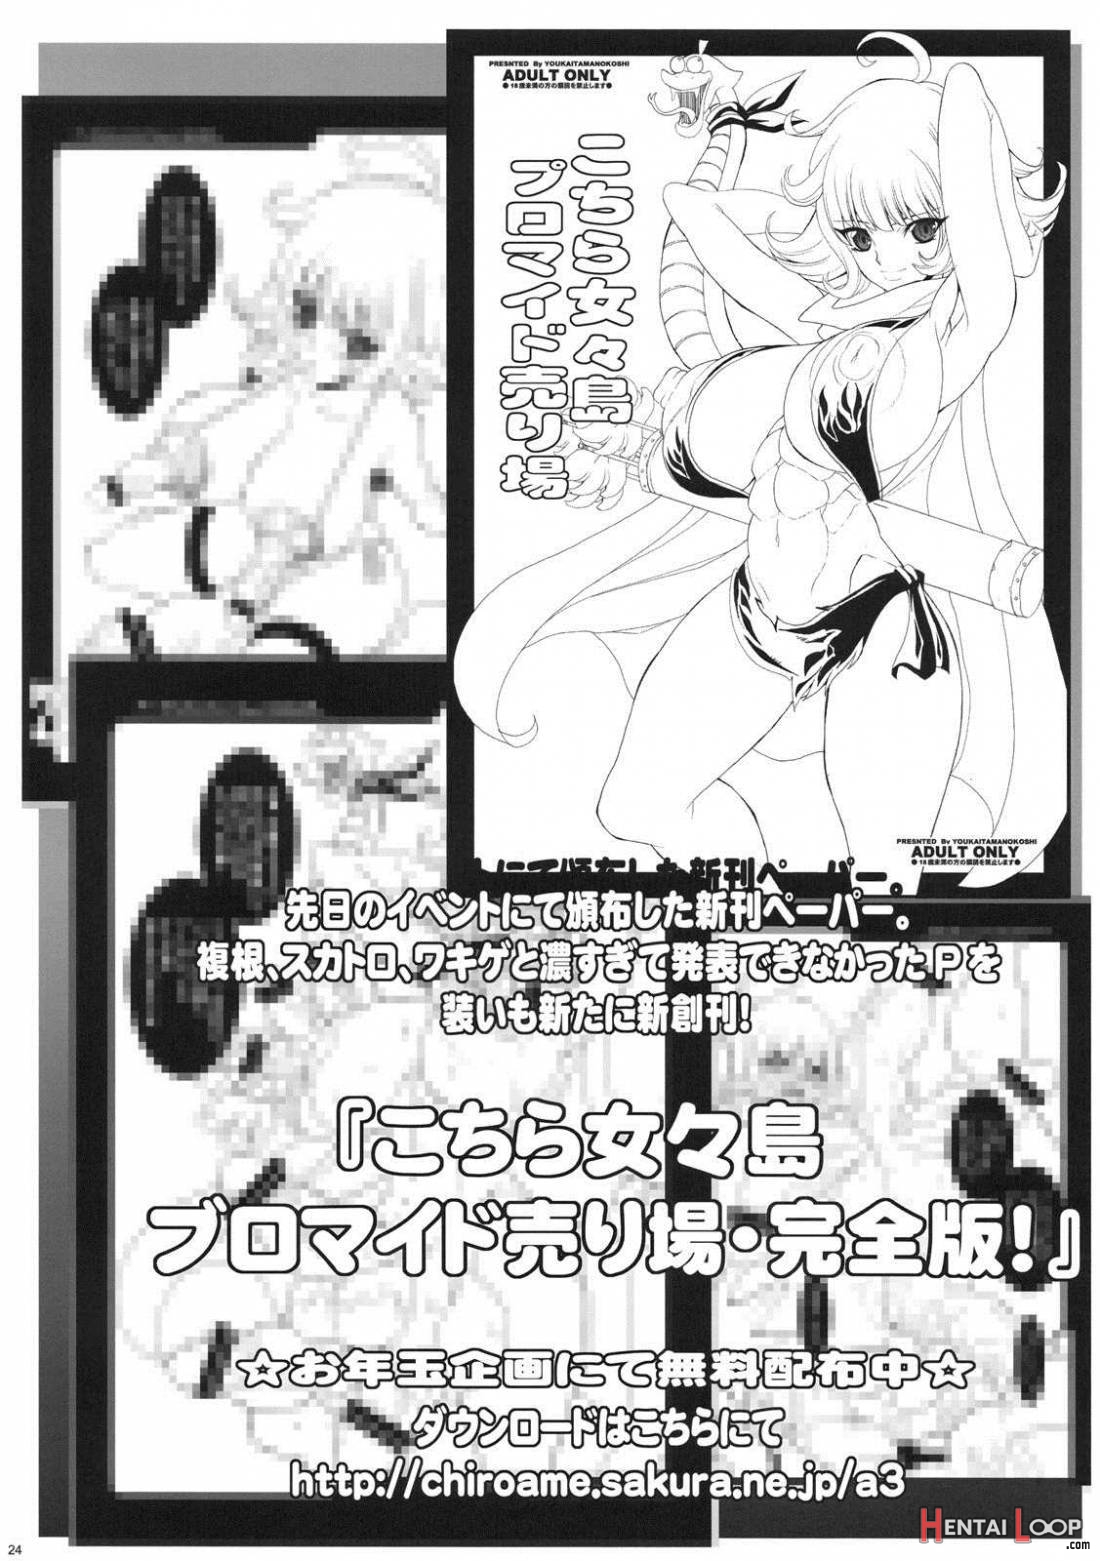 Kochira Human Shop Dai Auction Kaijou page 21